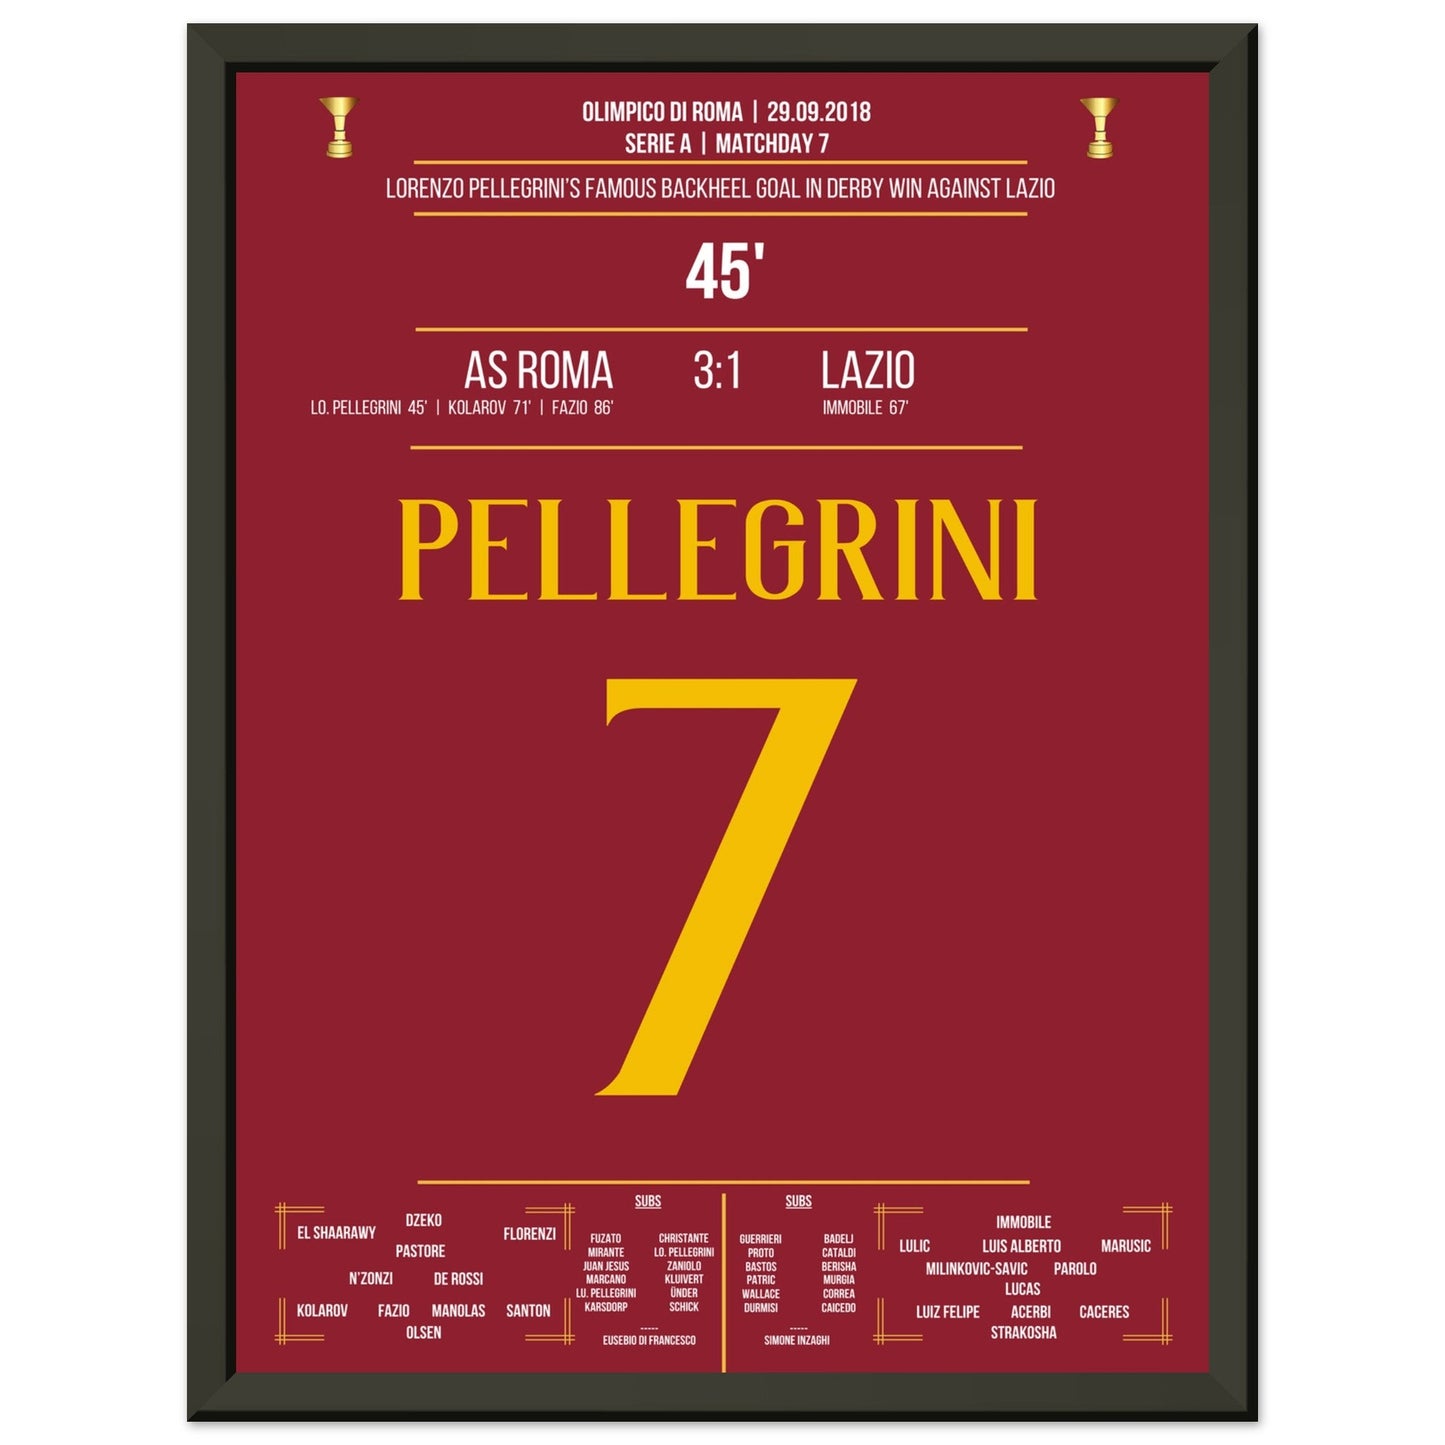 Pellegrini's Hackentor im Derby Sieg gegen Lazio in 2018